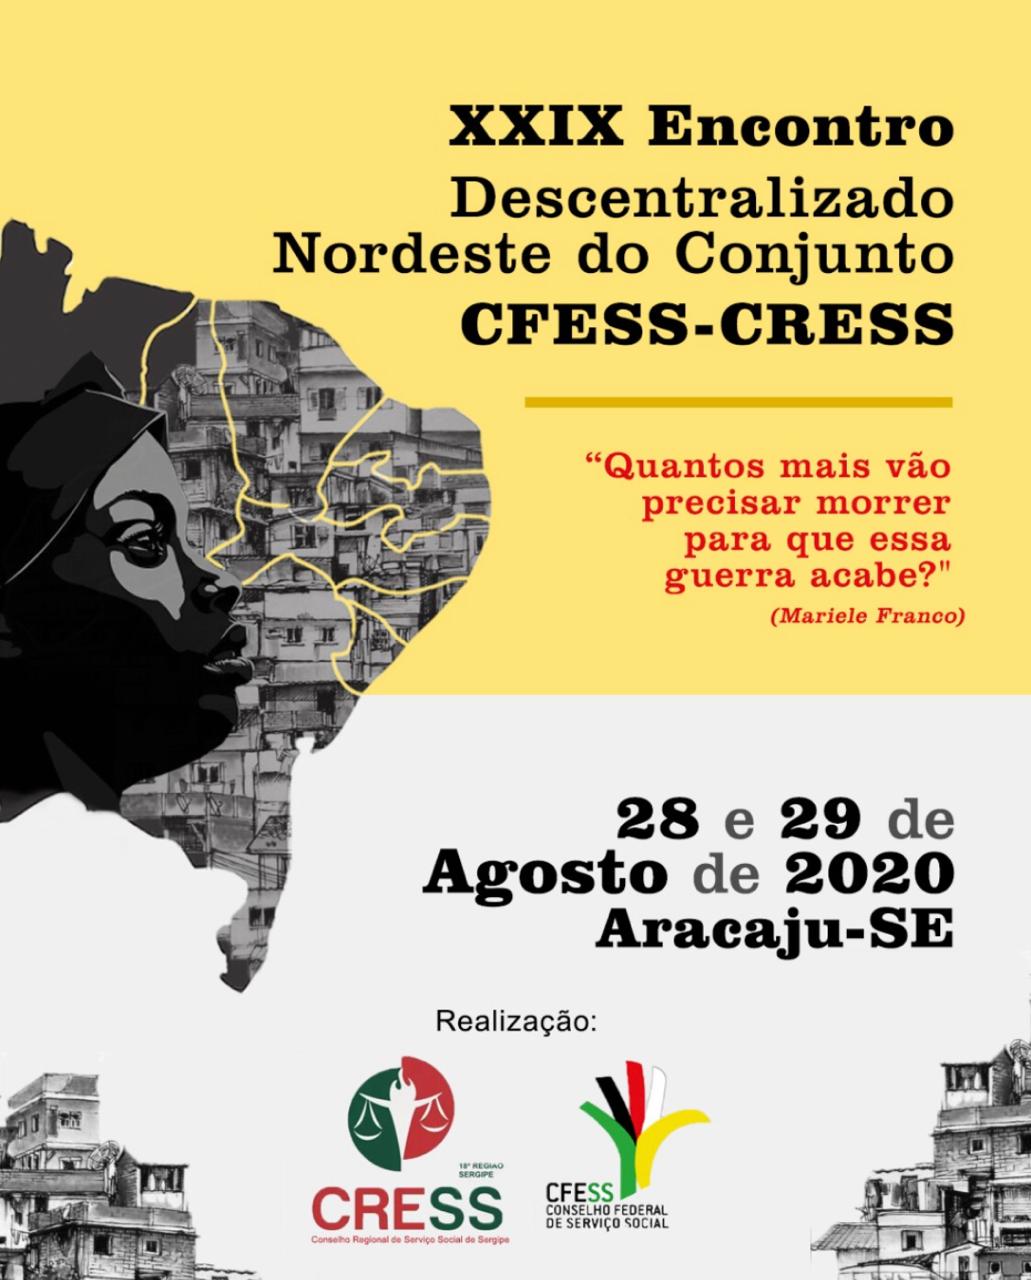 CRESS Sergipe realizará Reunião Online alusiva ao XXIX Encontro Descentralizado da Região Nordeste